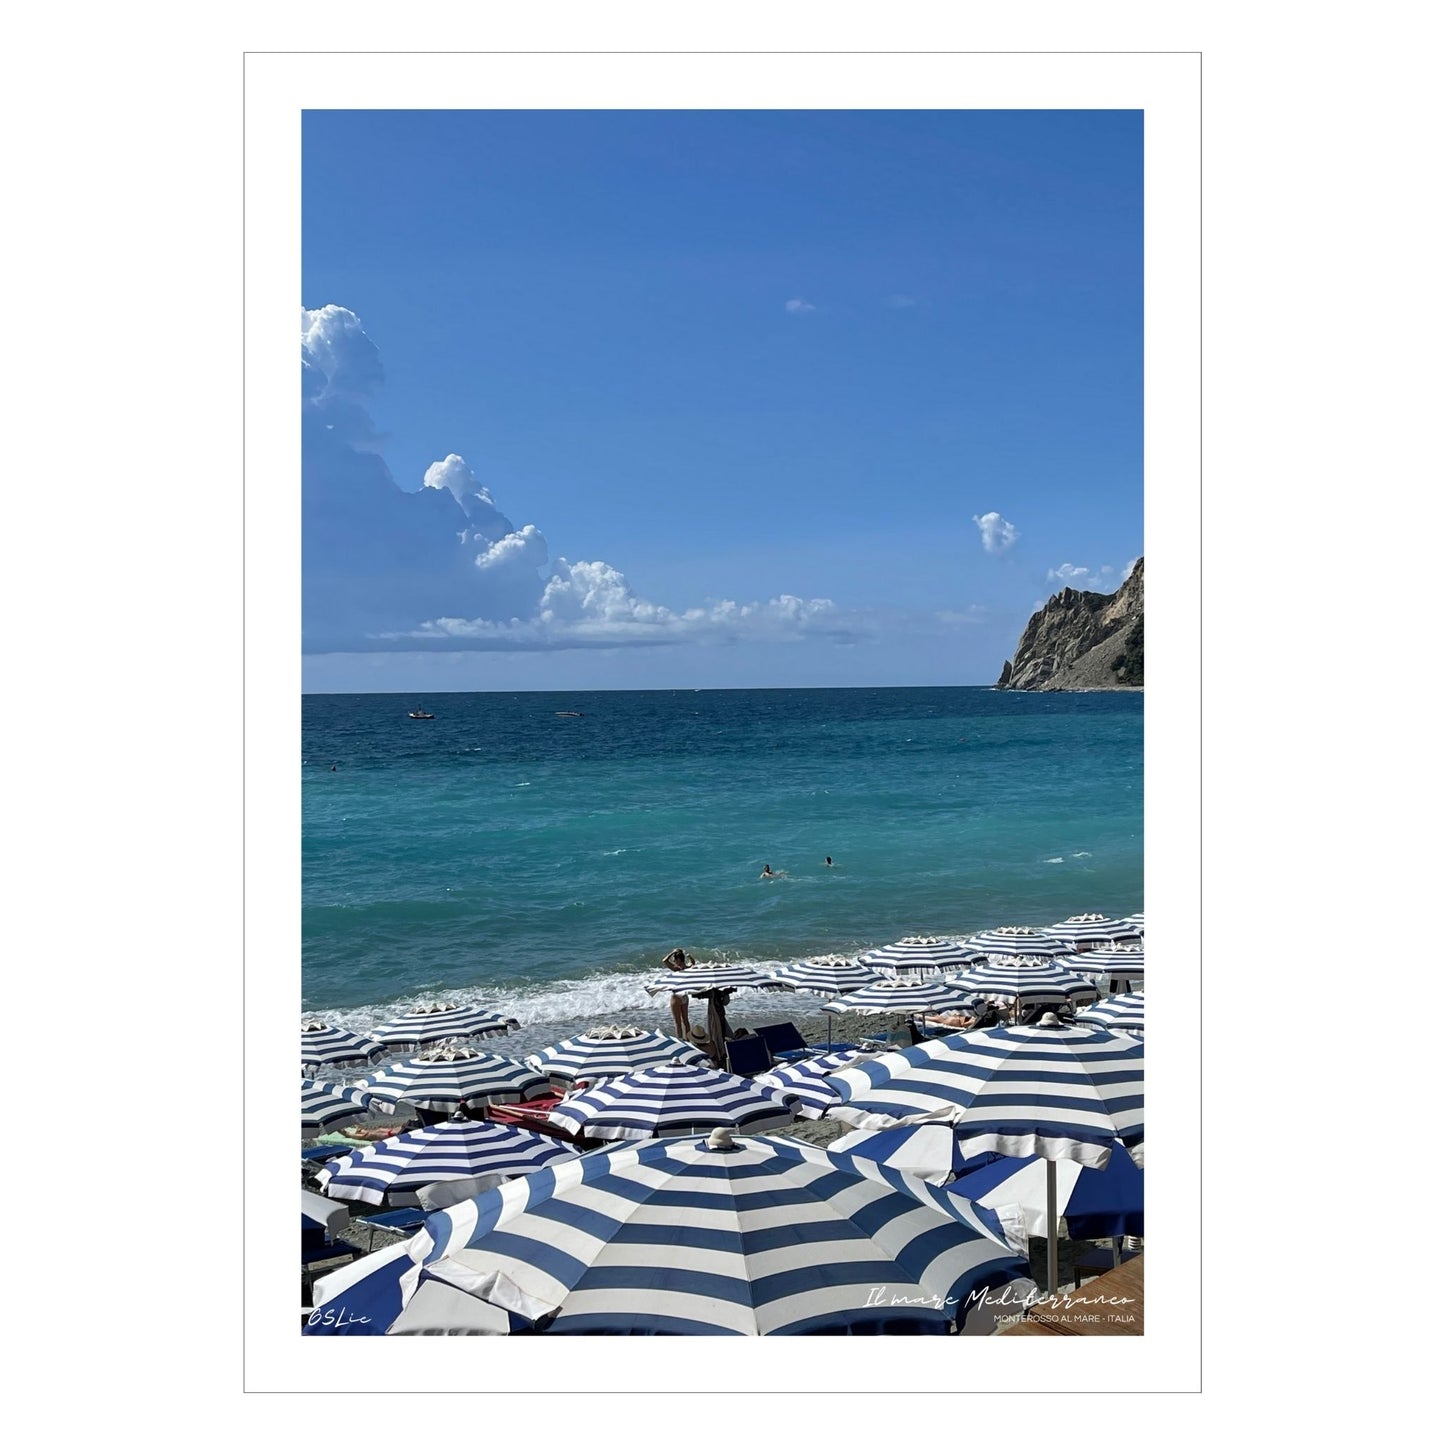 Motiv fra Montereosso al Mare, en av de fem byene i Cinque Terre ved Liguriakysten i Italia. Bildet viser blått middelhav og himmel som helt ned i vannet i horisonten. På høyre side skimtes noen klipper. På sranden er det tett i tett med blå og hvitstripete parasoller.